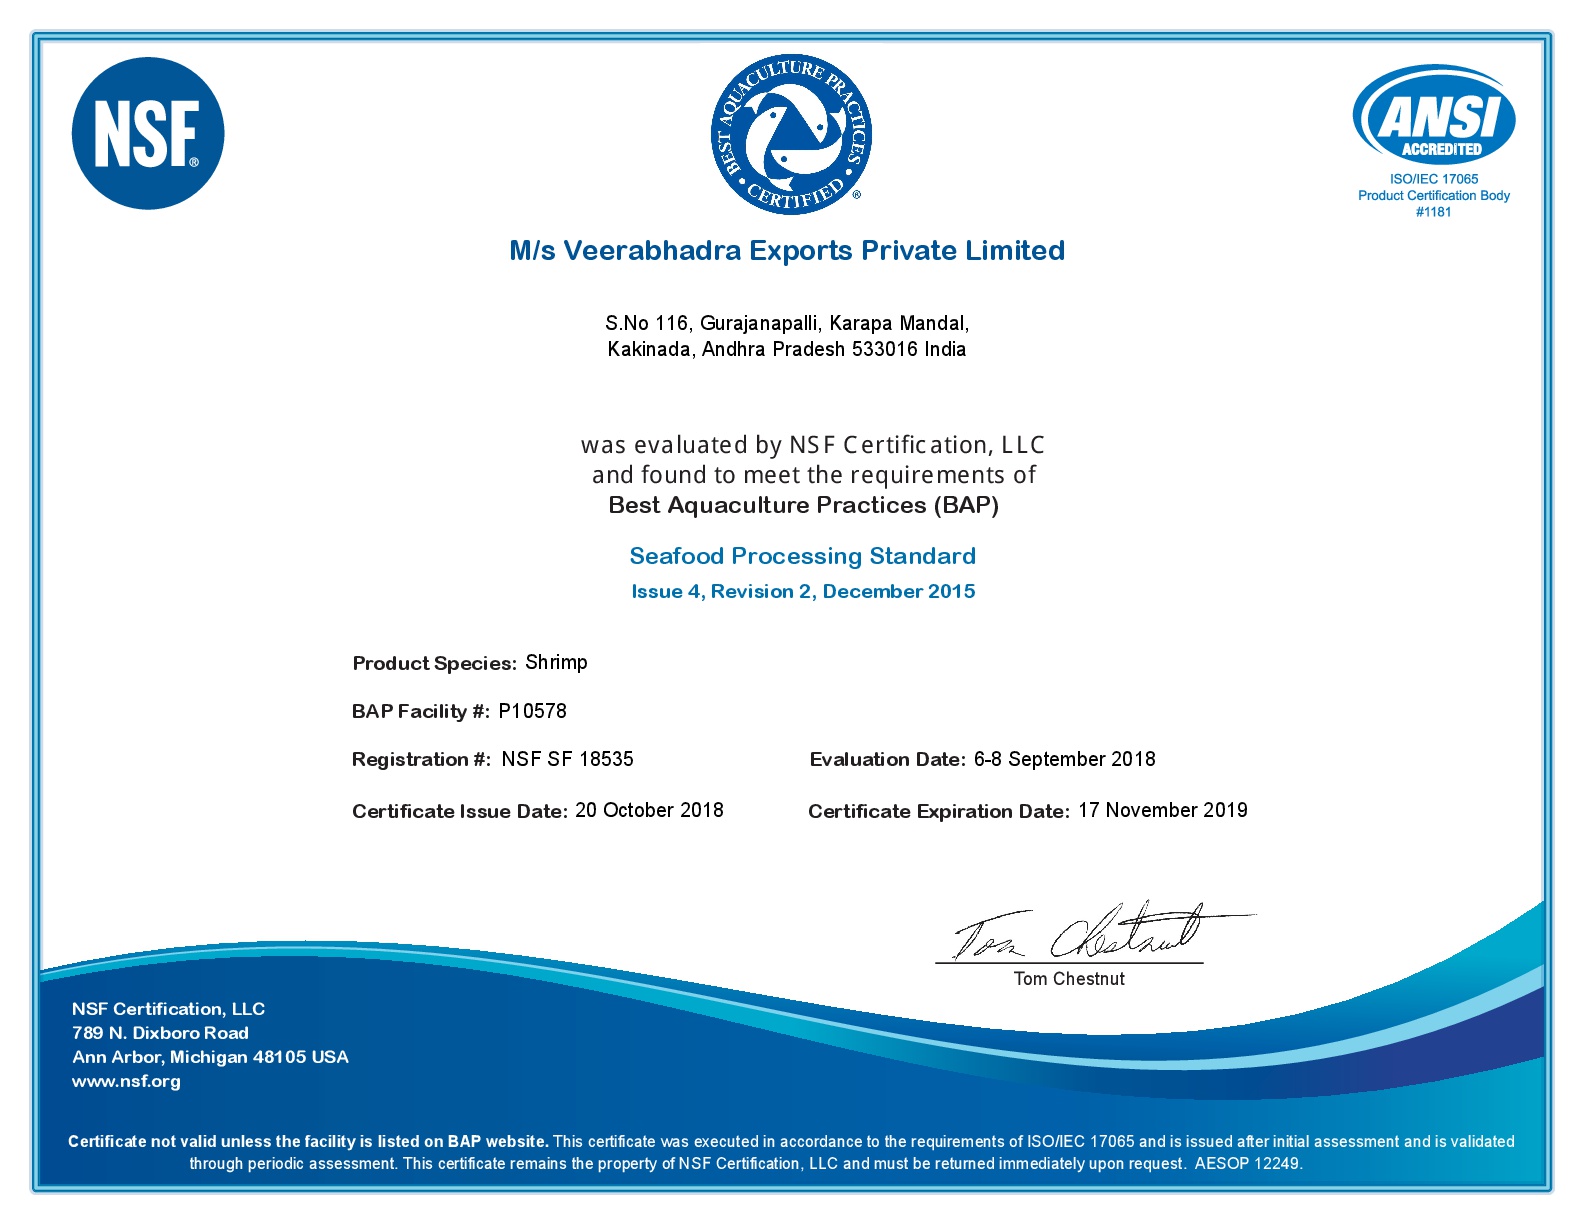 VB Exports Pvt Ltd Certificates